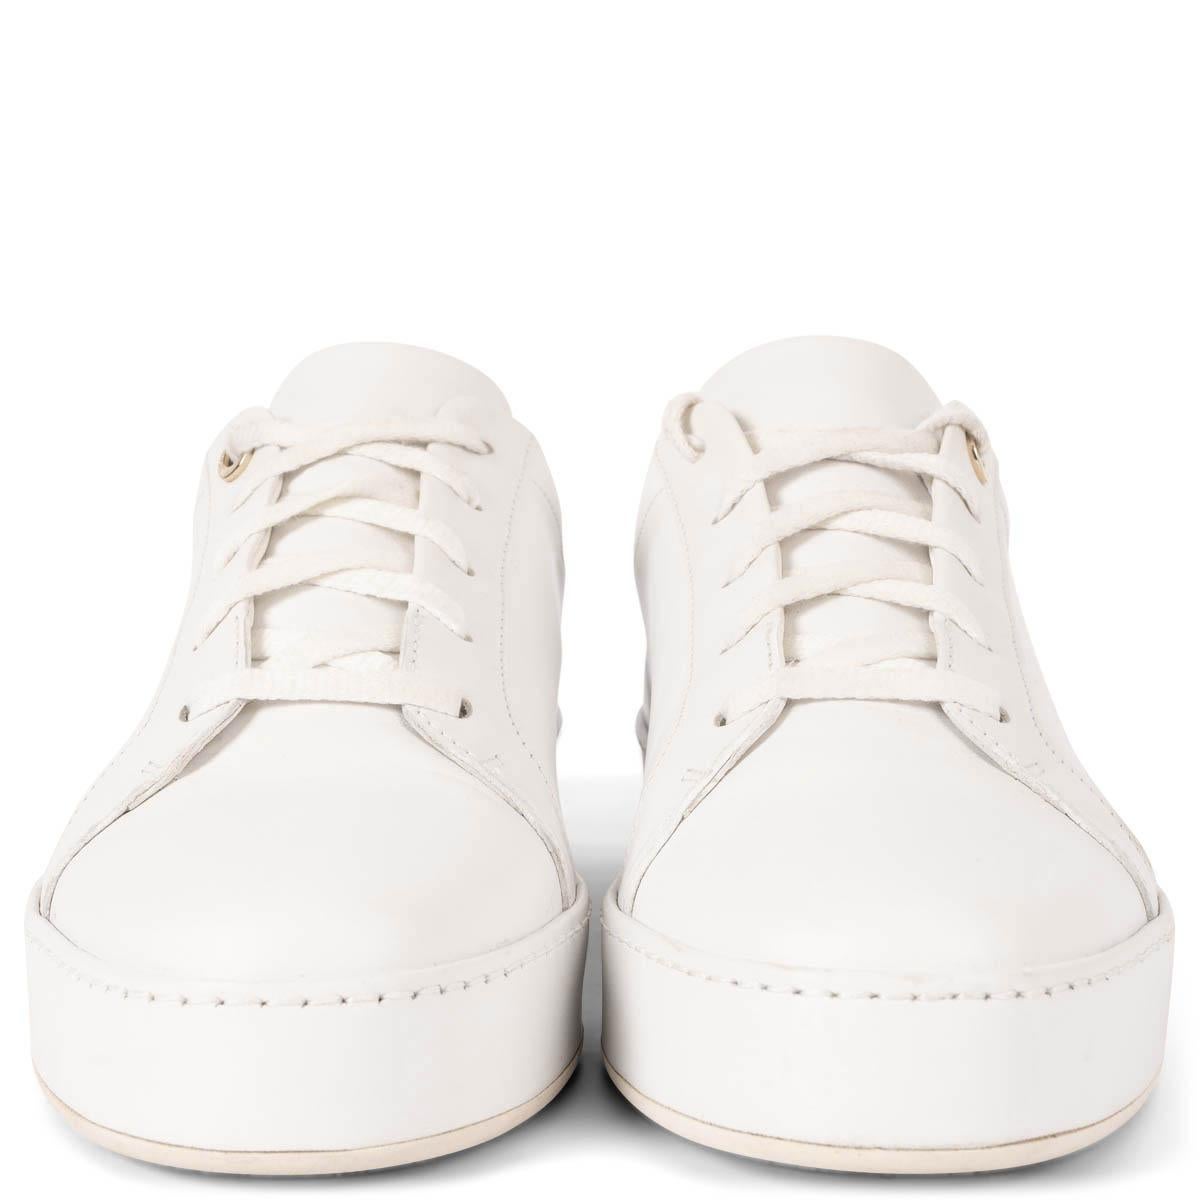 100% authentische Loro Piana Nuages Sneakers aus weißem Leder mit einer lederumwickelten Plateausohle aus Gummi. Sie wurden getragen und weisen sehr schwache dunklere Flecken auf. Insgesamt in ausgezeichnetem Zustand. 

Messungen
Aufgedruckte